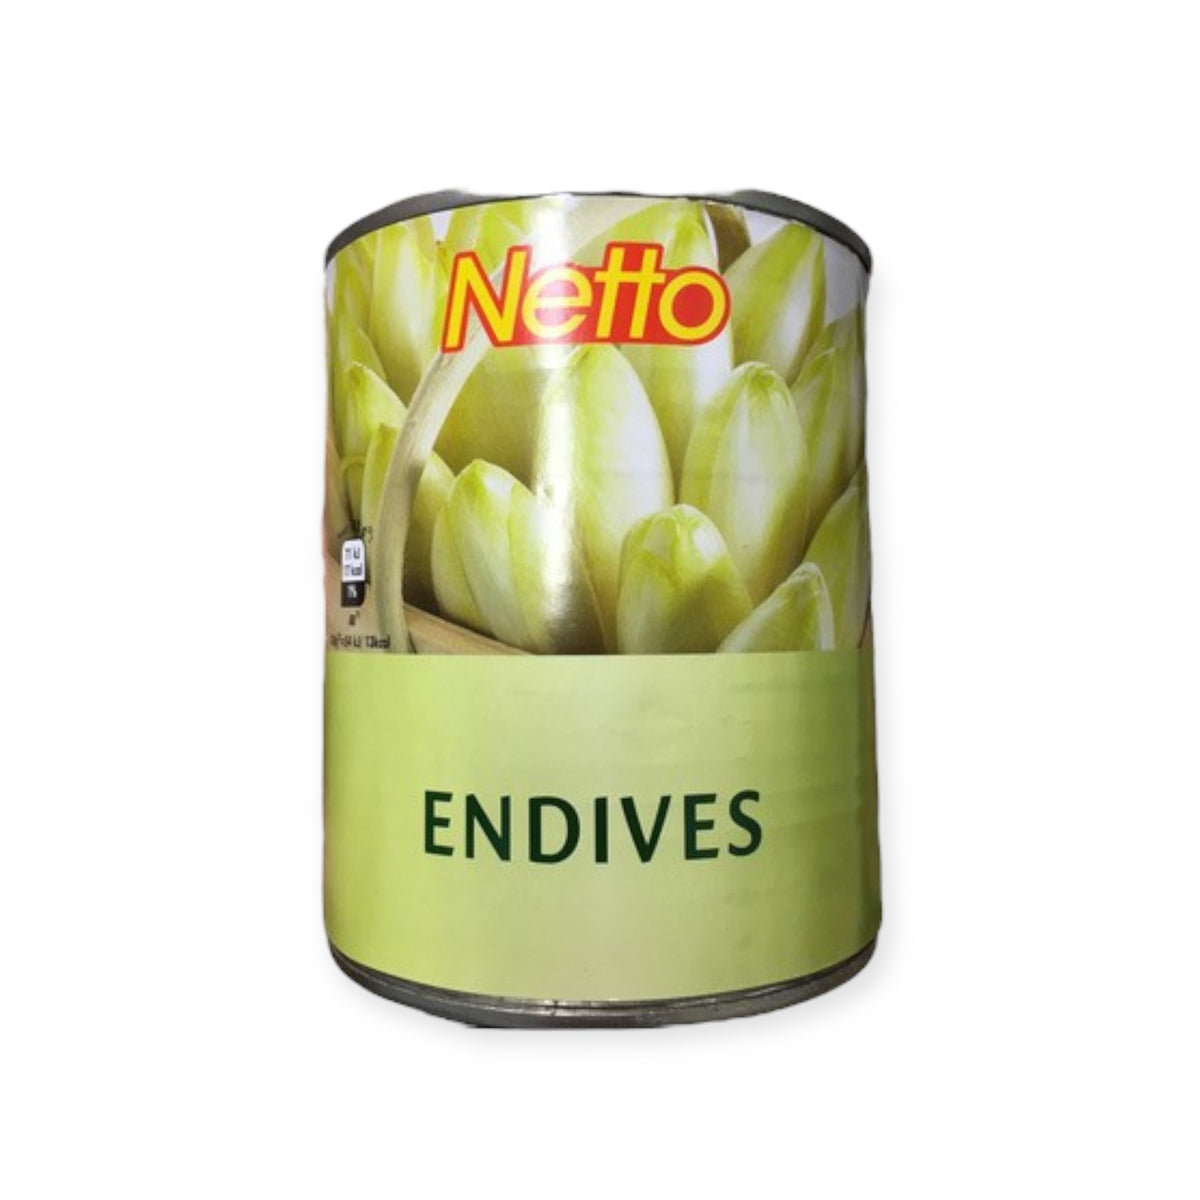 NETTO Endives Box 530g -I13